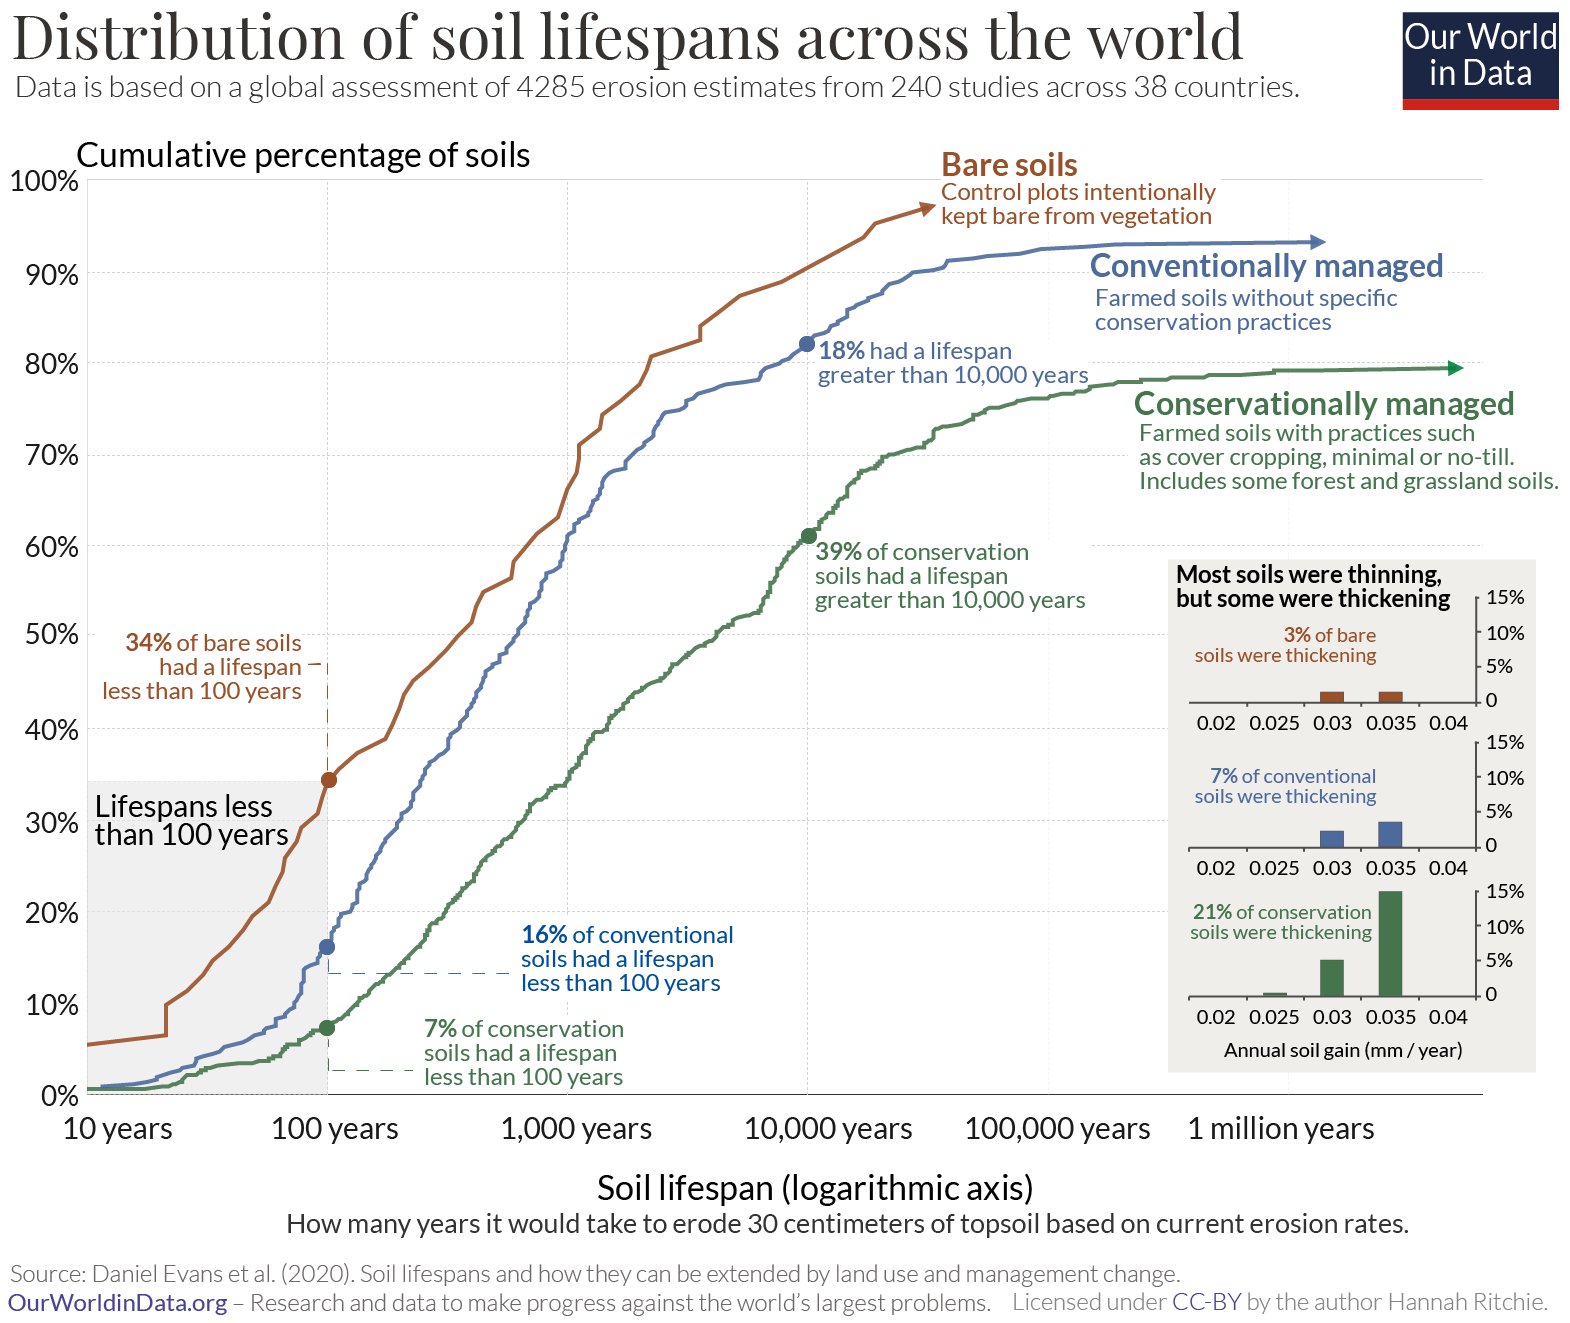 Soil lifespans